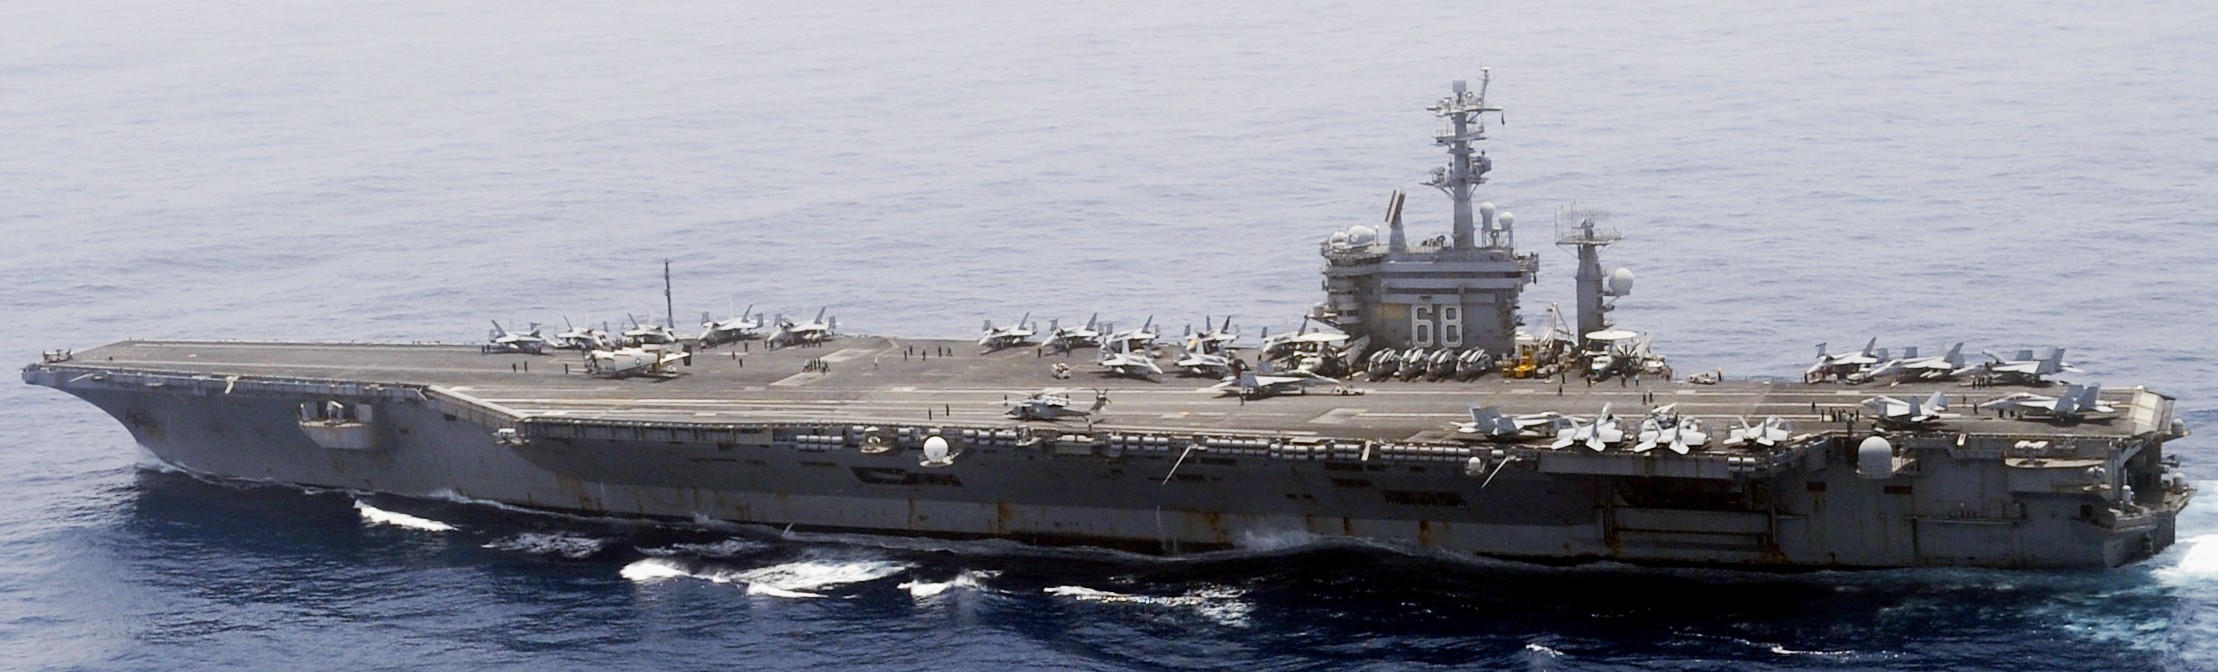 cvn-68 uss nimitz aircraft carrier air wing cvw-11 us navy indian ocean 118